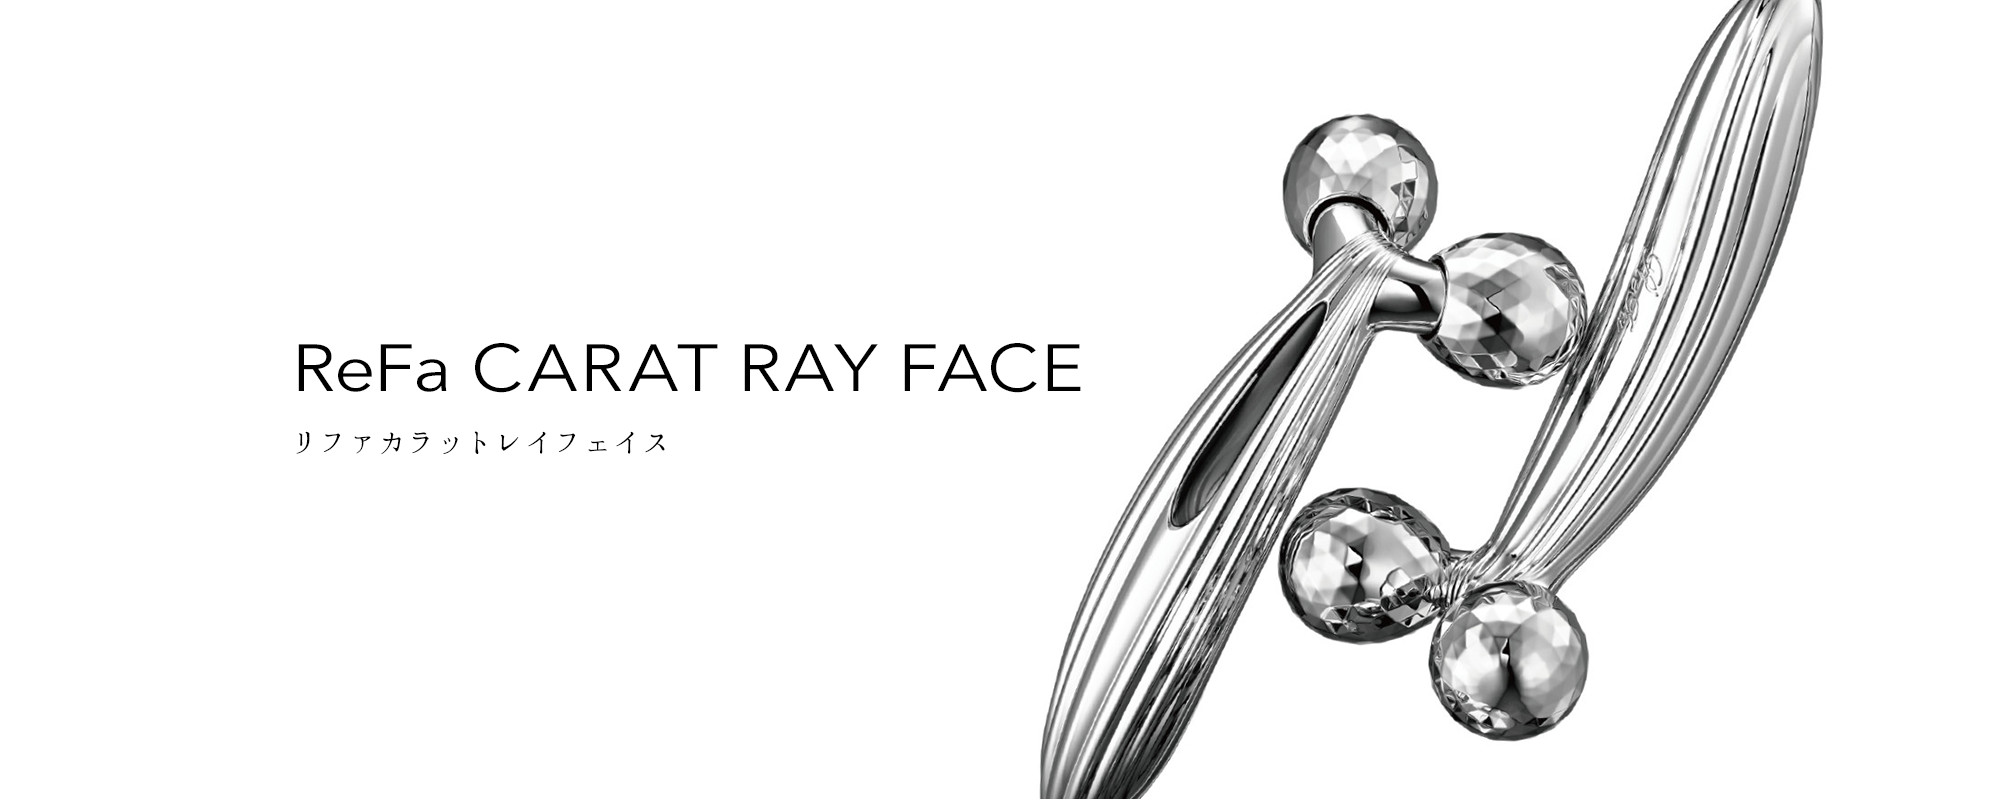 リファカラットレイフェイス - ReFa CARAT RAY FACE | 商品情報 | ReFa 